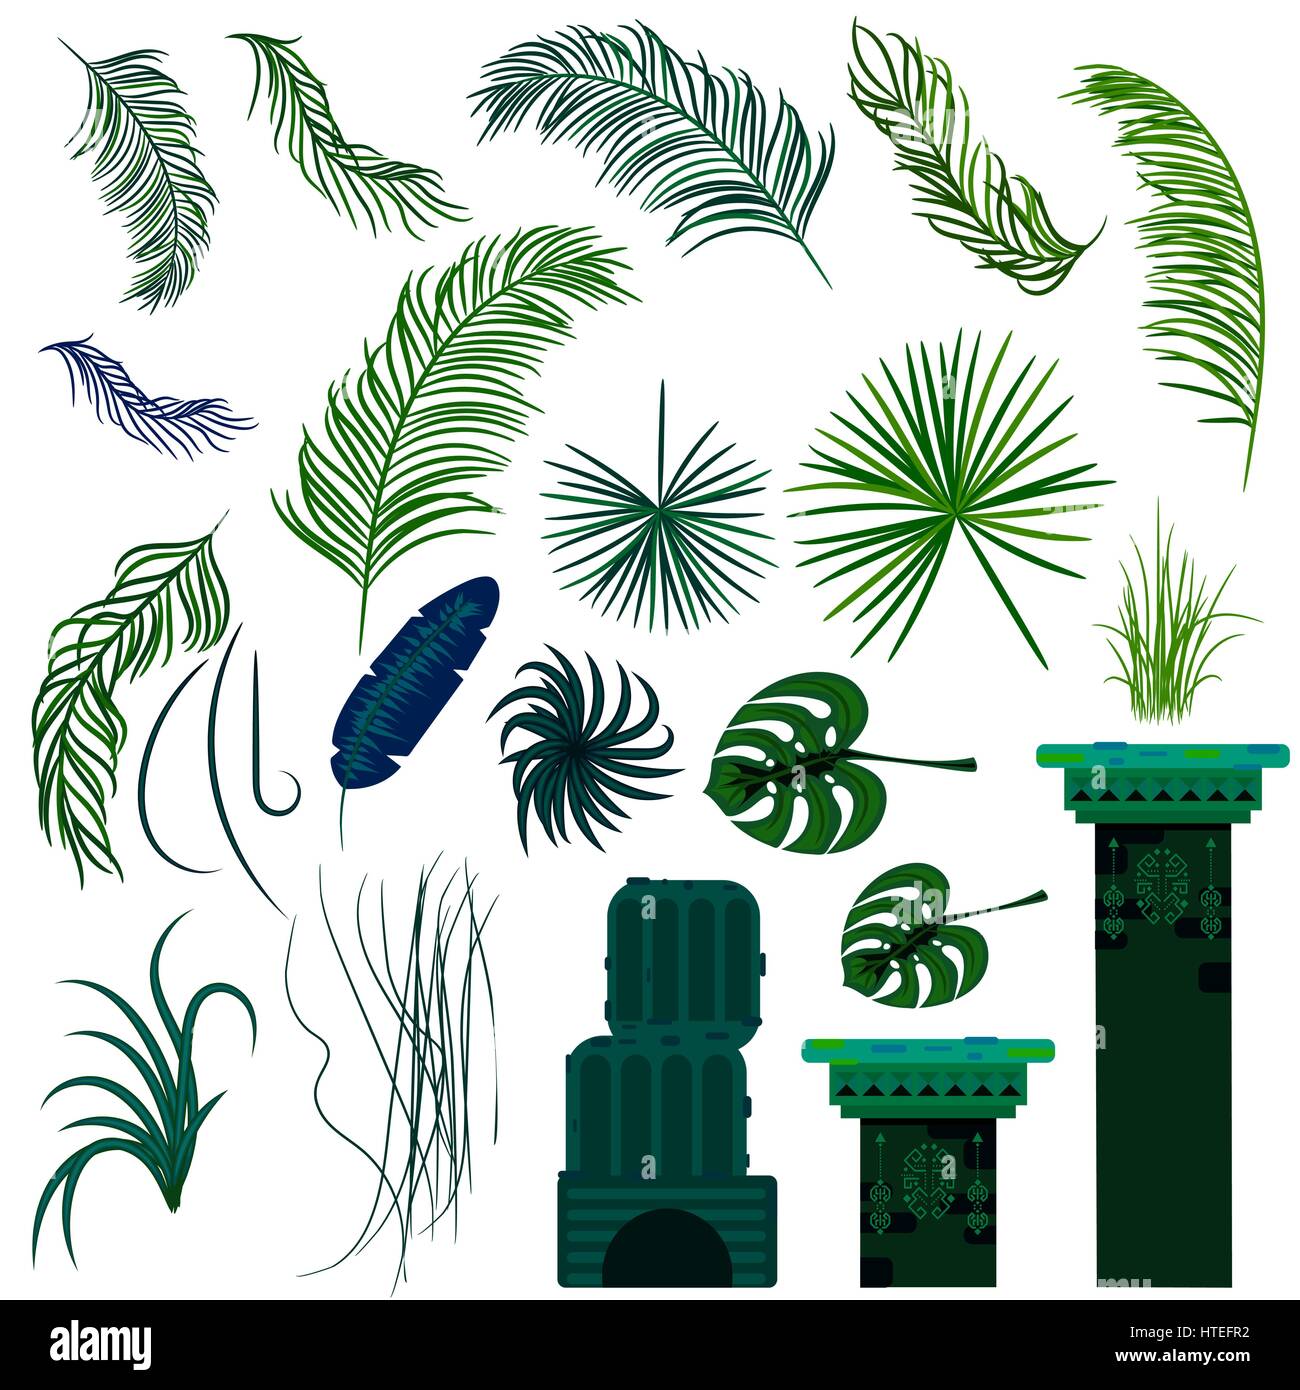 Dschungel-Blätter und alte Ruine Säulen isolierte Objekte. Regenwald-Vektor-Pflanzen und grüne Palmen. Stock Vektor